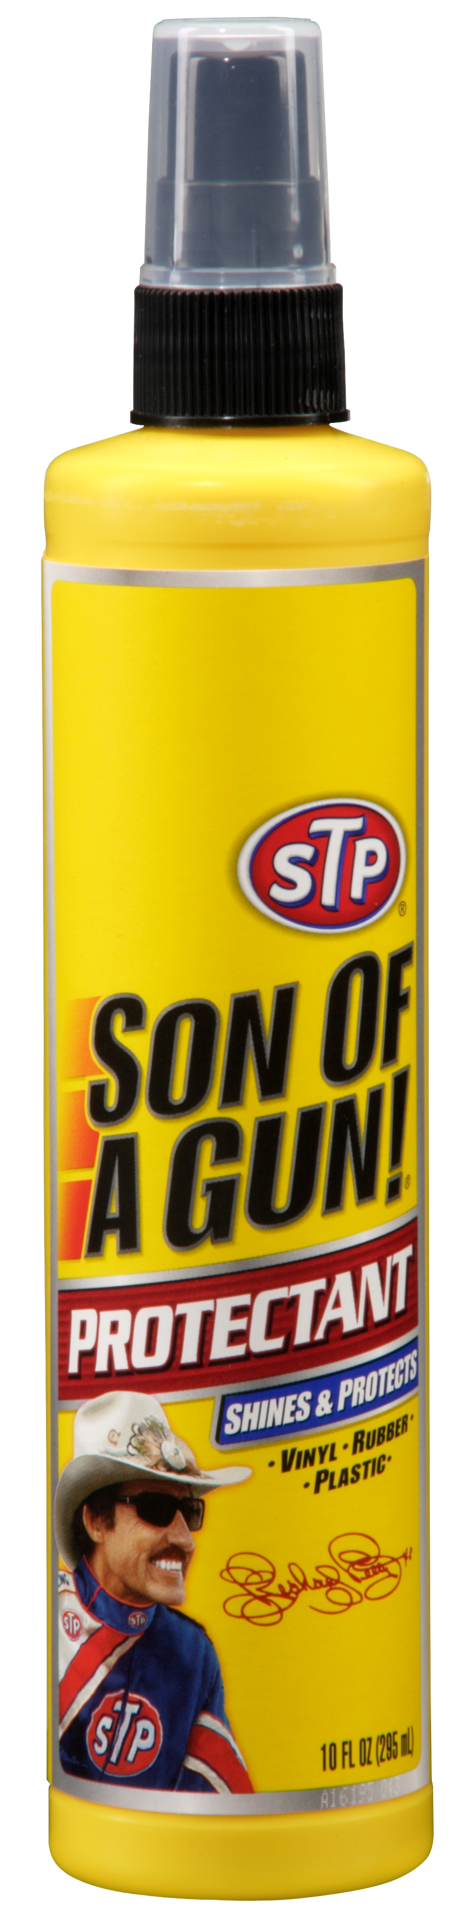 slide 1 of 1, Son Of A Gun  Protectant Pump (10 fluid ounces), 10 fl oz